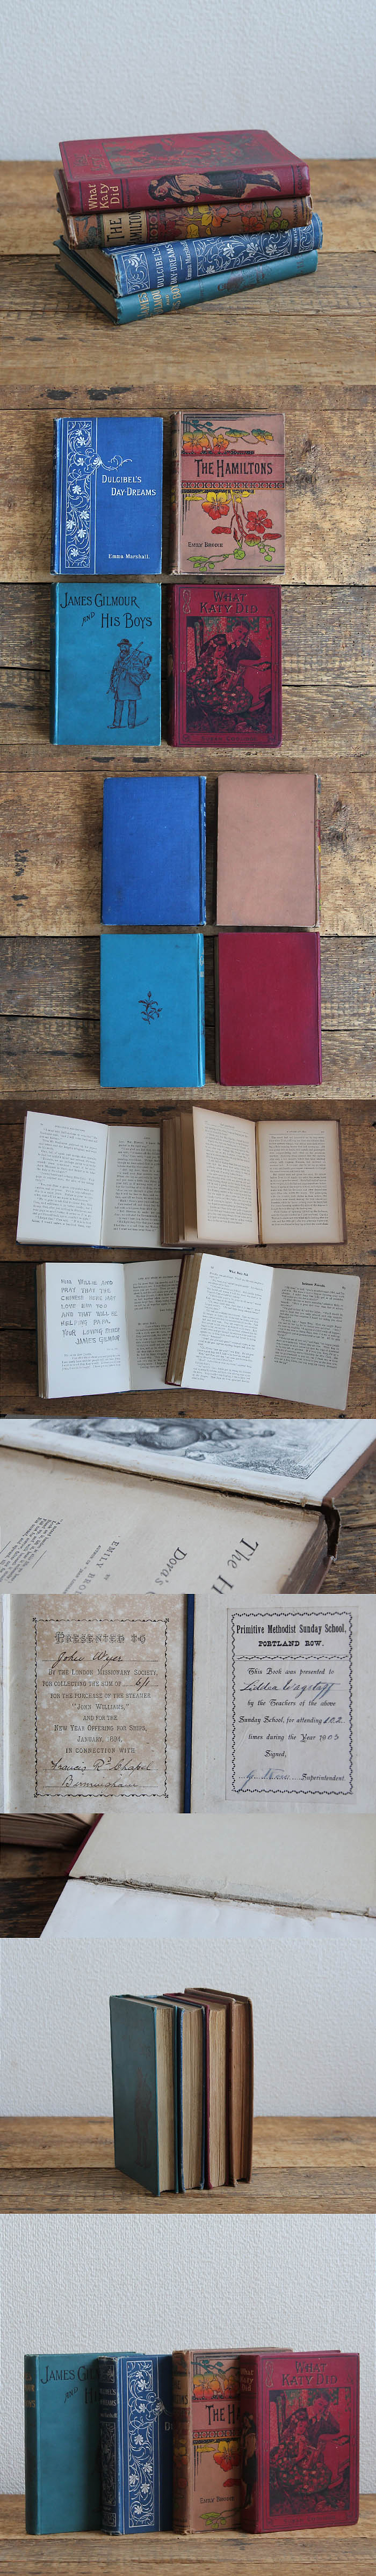 イギリス アンティークブック 4冊セット 古書 インテリア雑貨 洋書 ディスプレイ「雰囲気パーフェクト」P-037